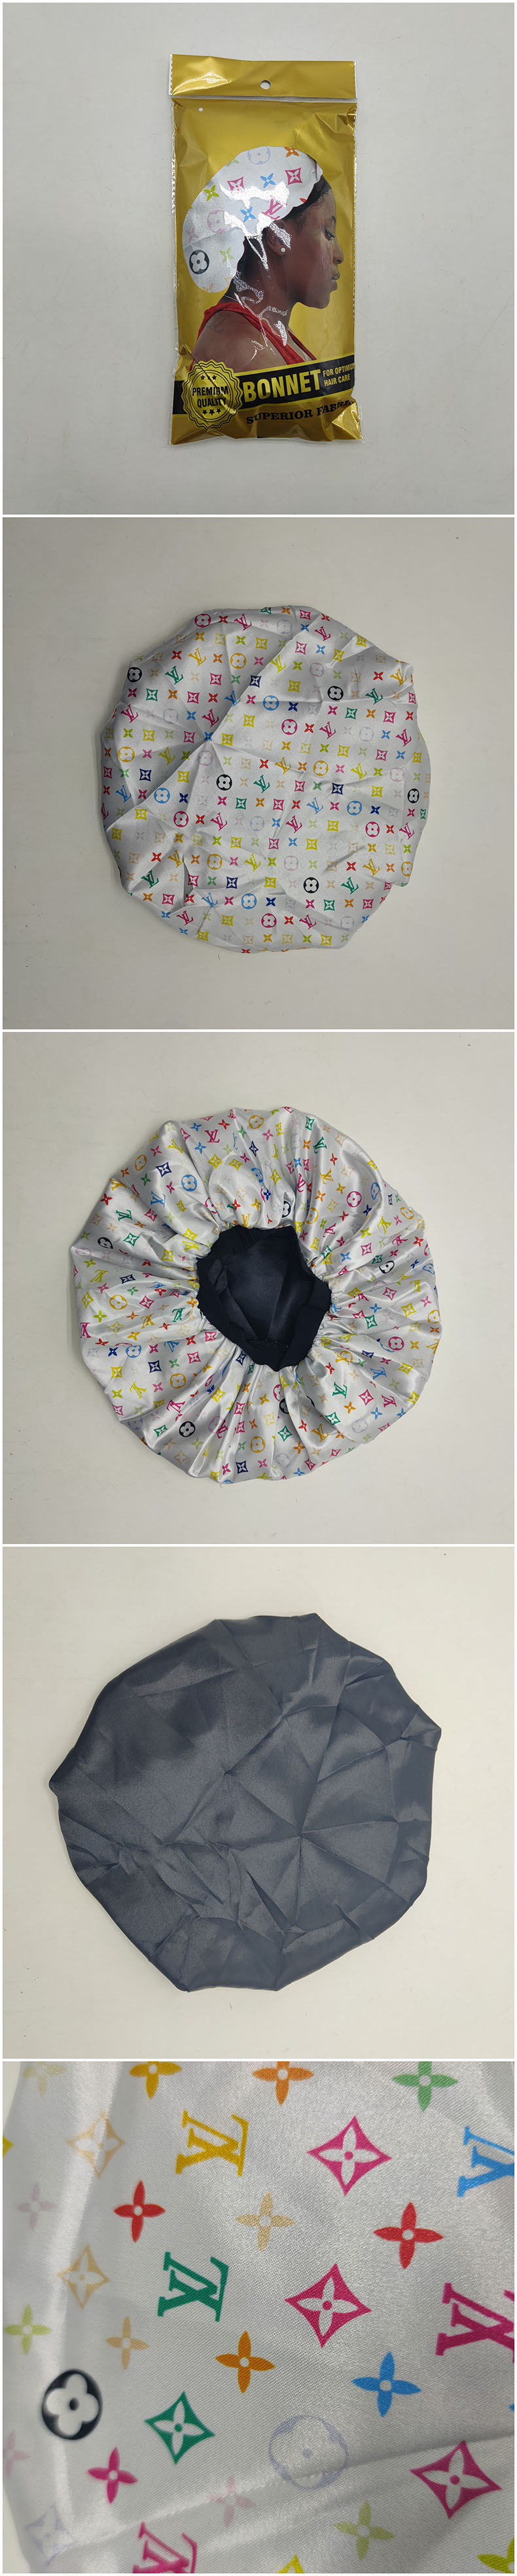 US$ 3.20 - LV colorful designer bonnet Instock DX-004 - www